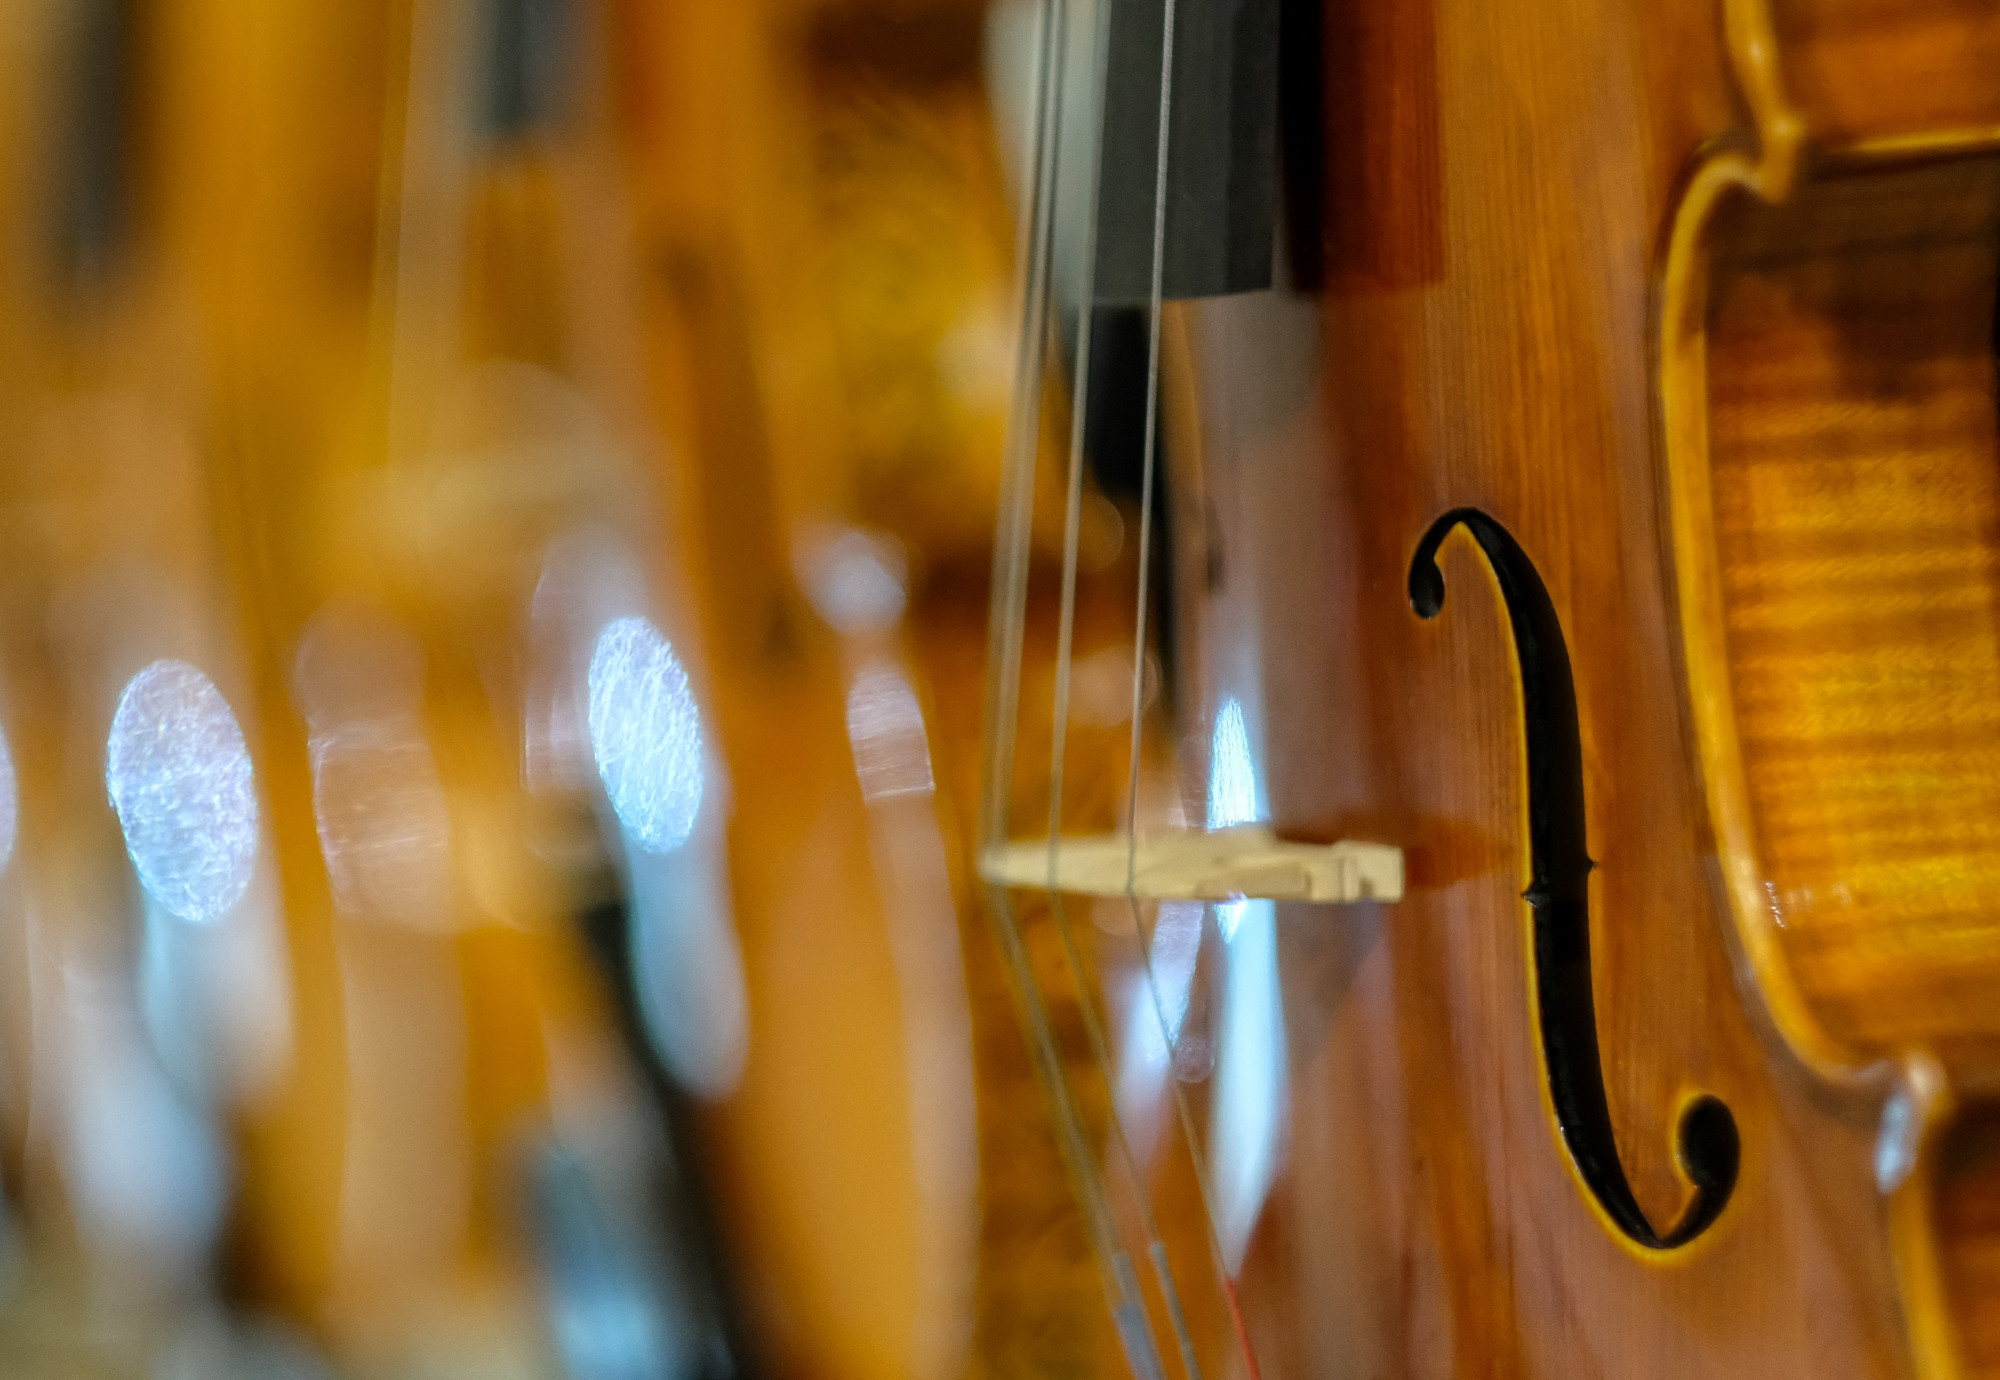 4 milliárdért kelhet el egy ritka Stradivari-hegedű